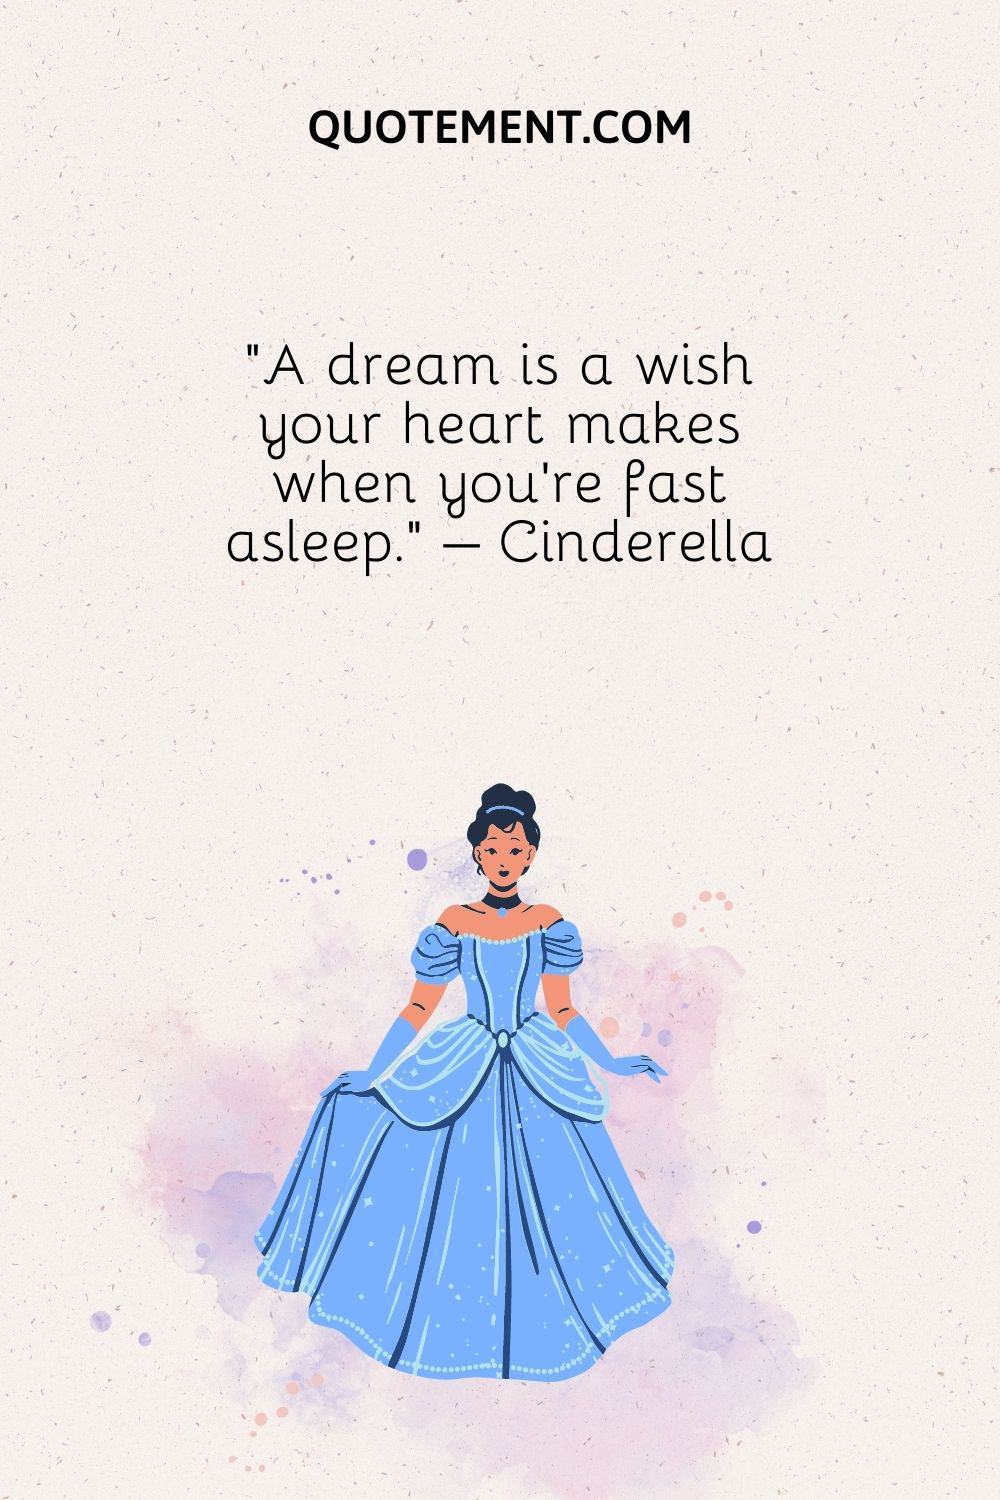 Un sueño es un deseo que pide tu corazón cuando estás profundamente dormido.